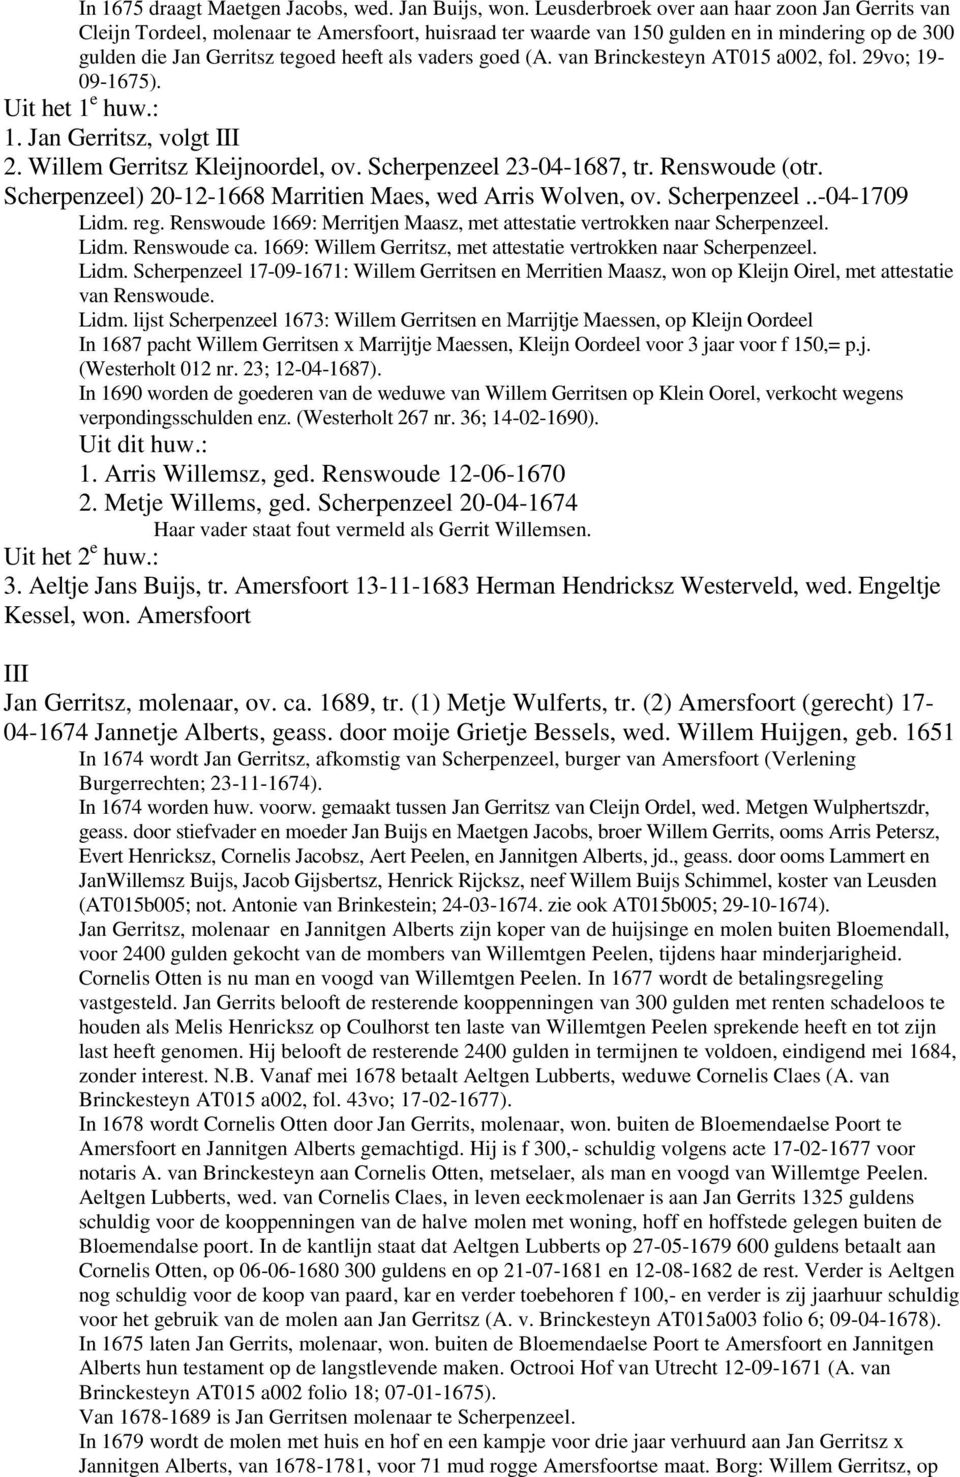 goed (A. van Brinckesteyn AT015 a002, fol. 29vo; 19-09-1675). Uit het 1 e huw.: 1. Jan Gerritsz, volgt III 2. Willem Gerritsz Kleijnoordel, ov. Scherpenzeel 23-04-1687, tr. Renswoude (otr.